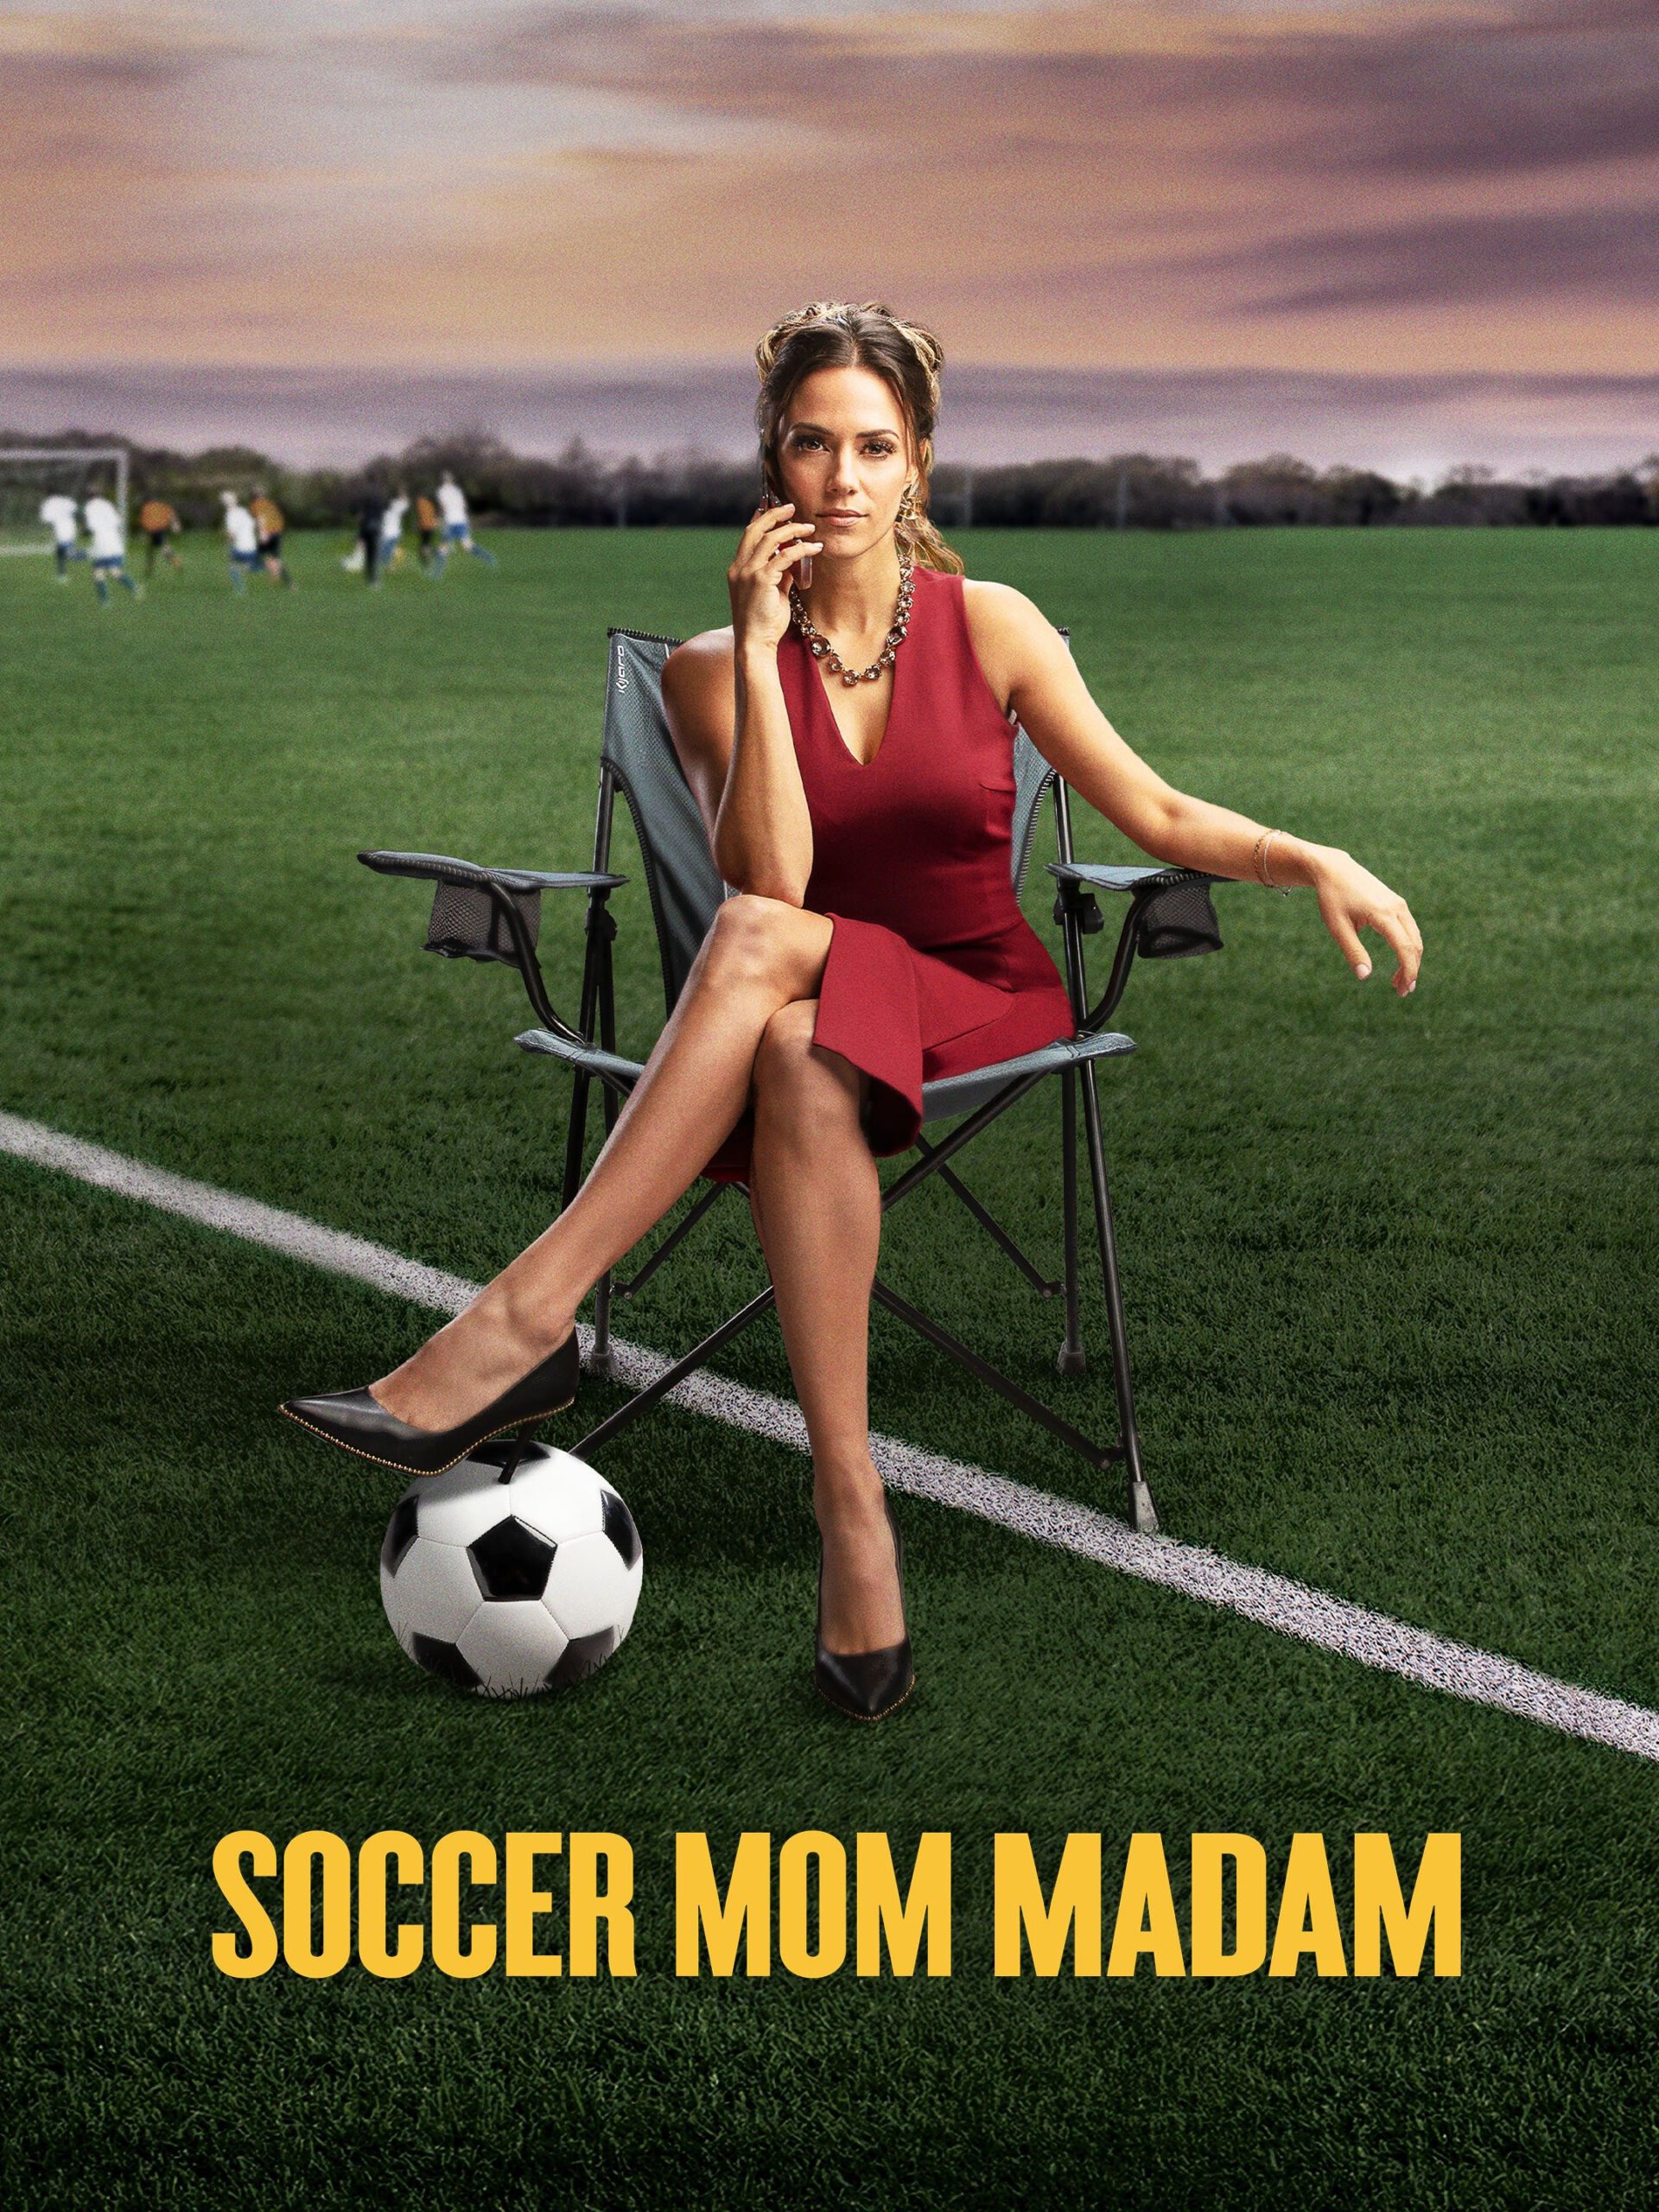 ดูหนังออนไลน์ฟรี Soccer Mom Madam (2021) ซอกเกอร์มัมมาดาม